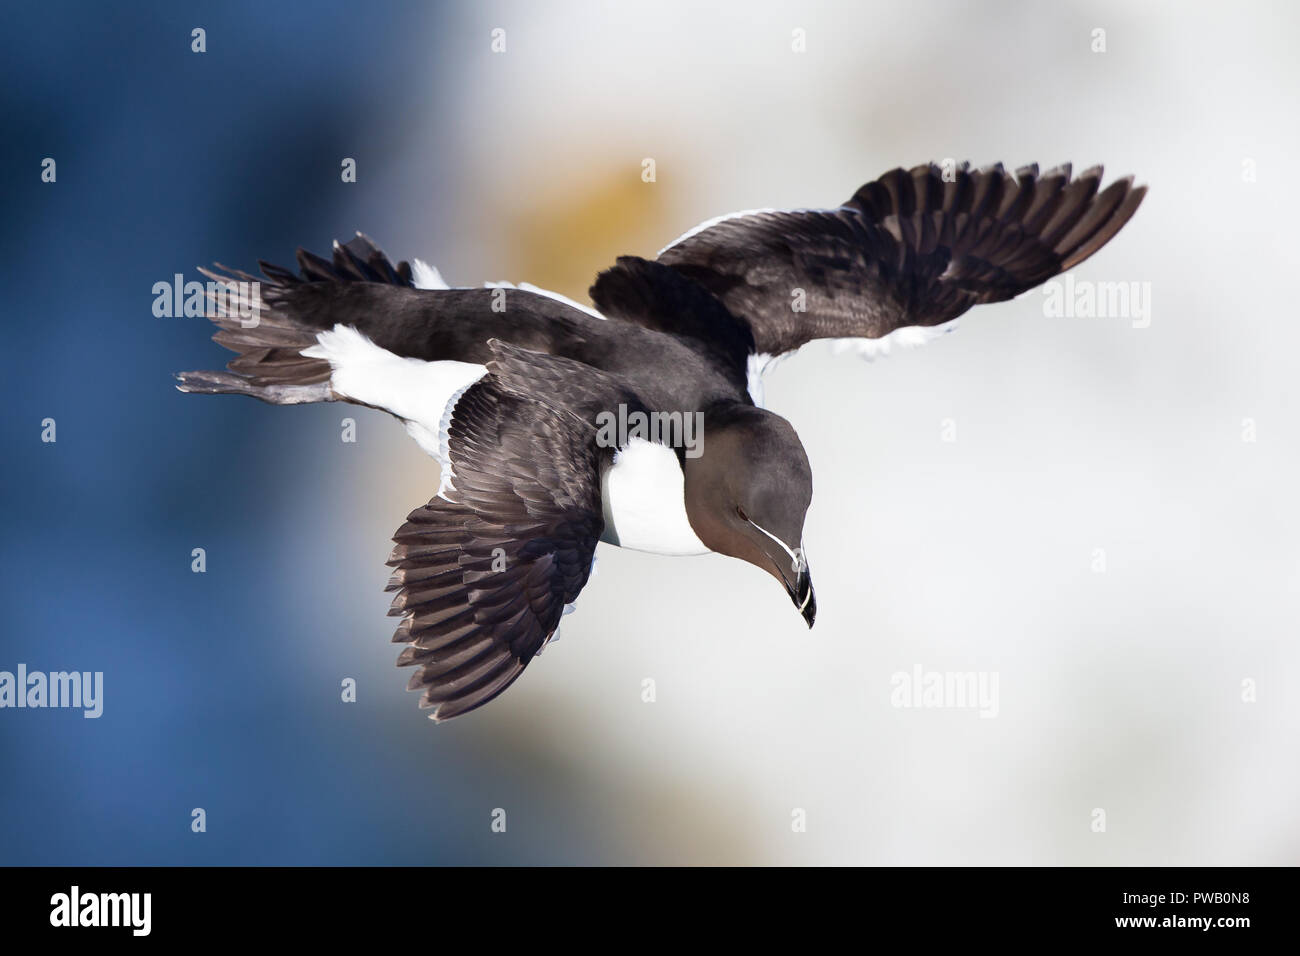 Gros plan détaillé à angle élevé de l'oiseau de mer volant du Royaume-Uni (Alca torda) isolé en vol à mi-air, les ailes se répandent, regardant vers le bas, sous le soleil d'été. Banque D'Images